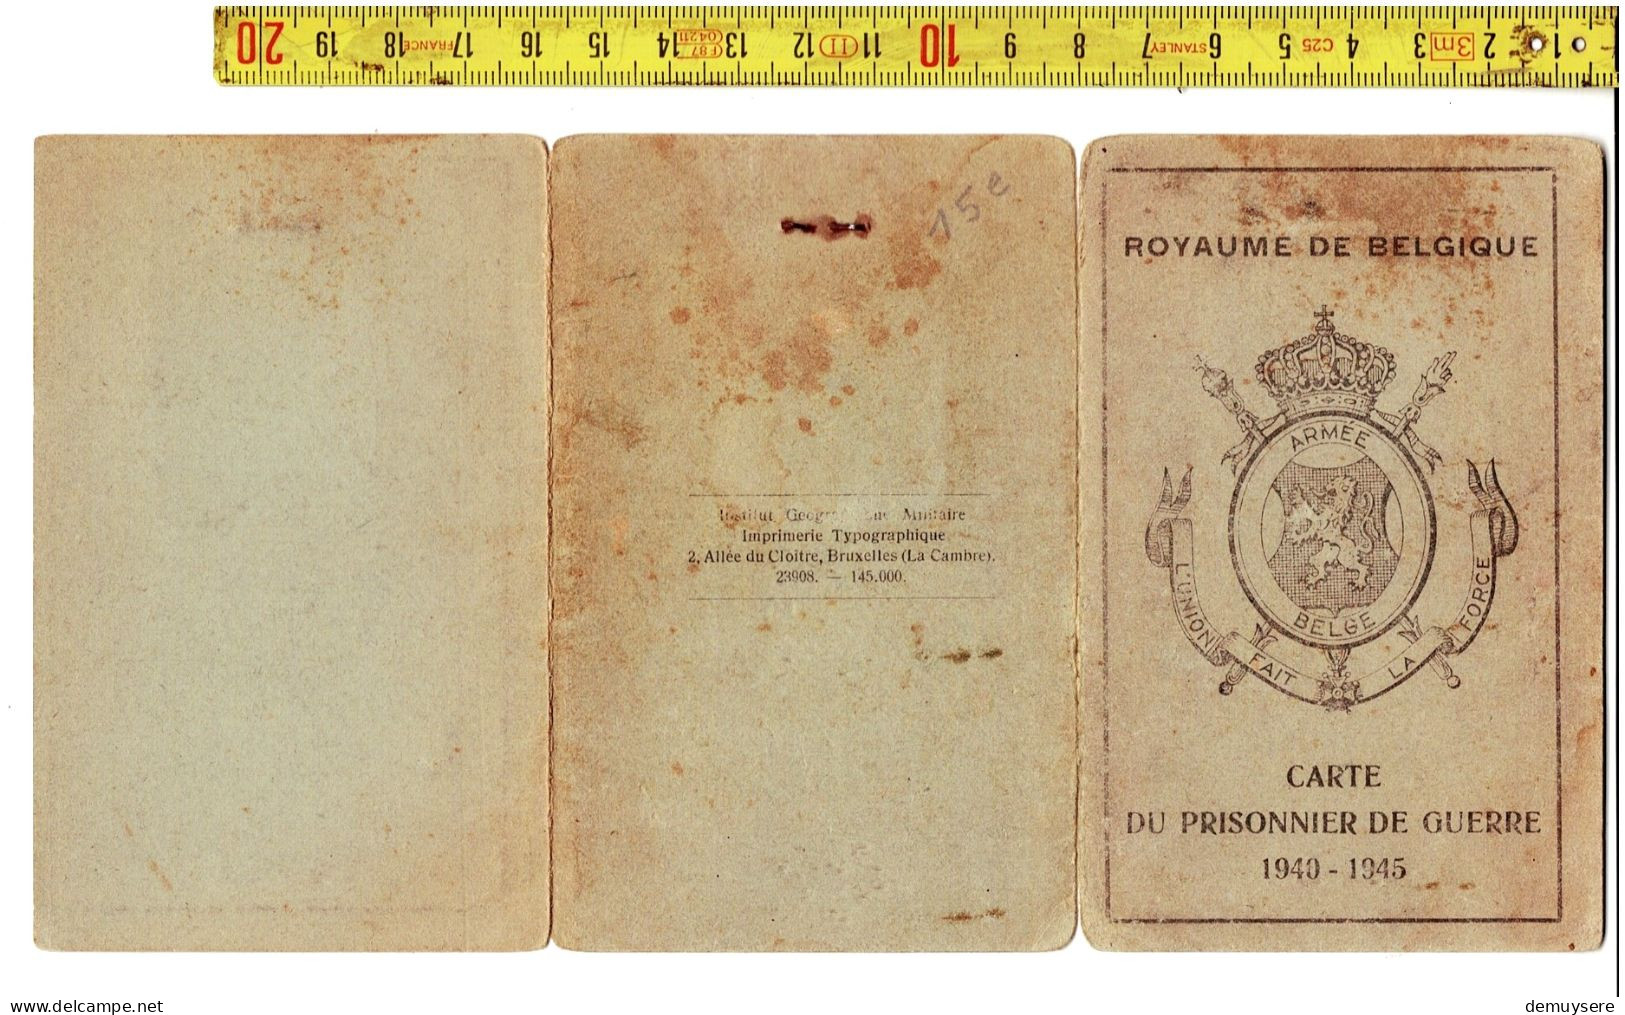 KL 5300 - ROYAUME DE BELGIQUE - CARTE DU PRISONNIER DE GUERRE 1940-1945 - BRUYNEEL GUSTAVE - PITTHEM - Documents